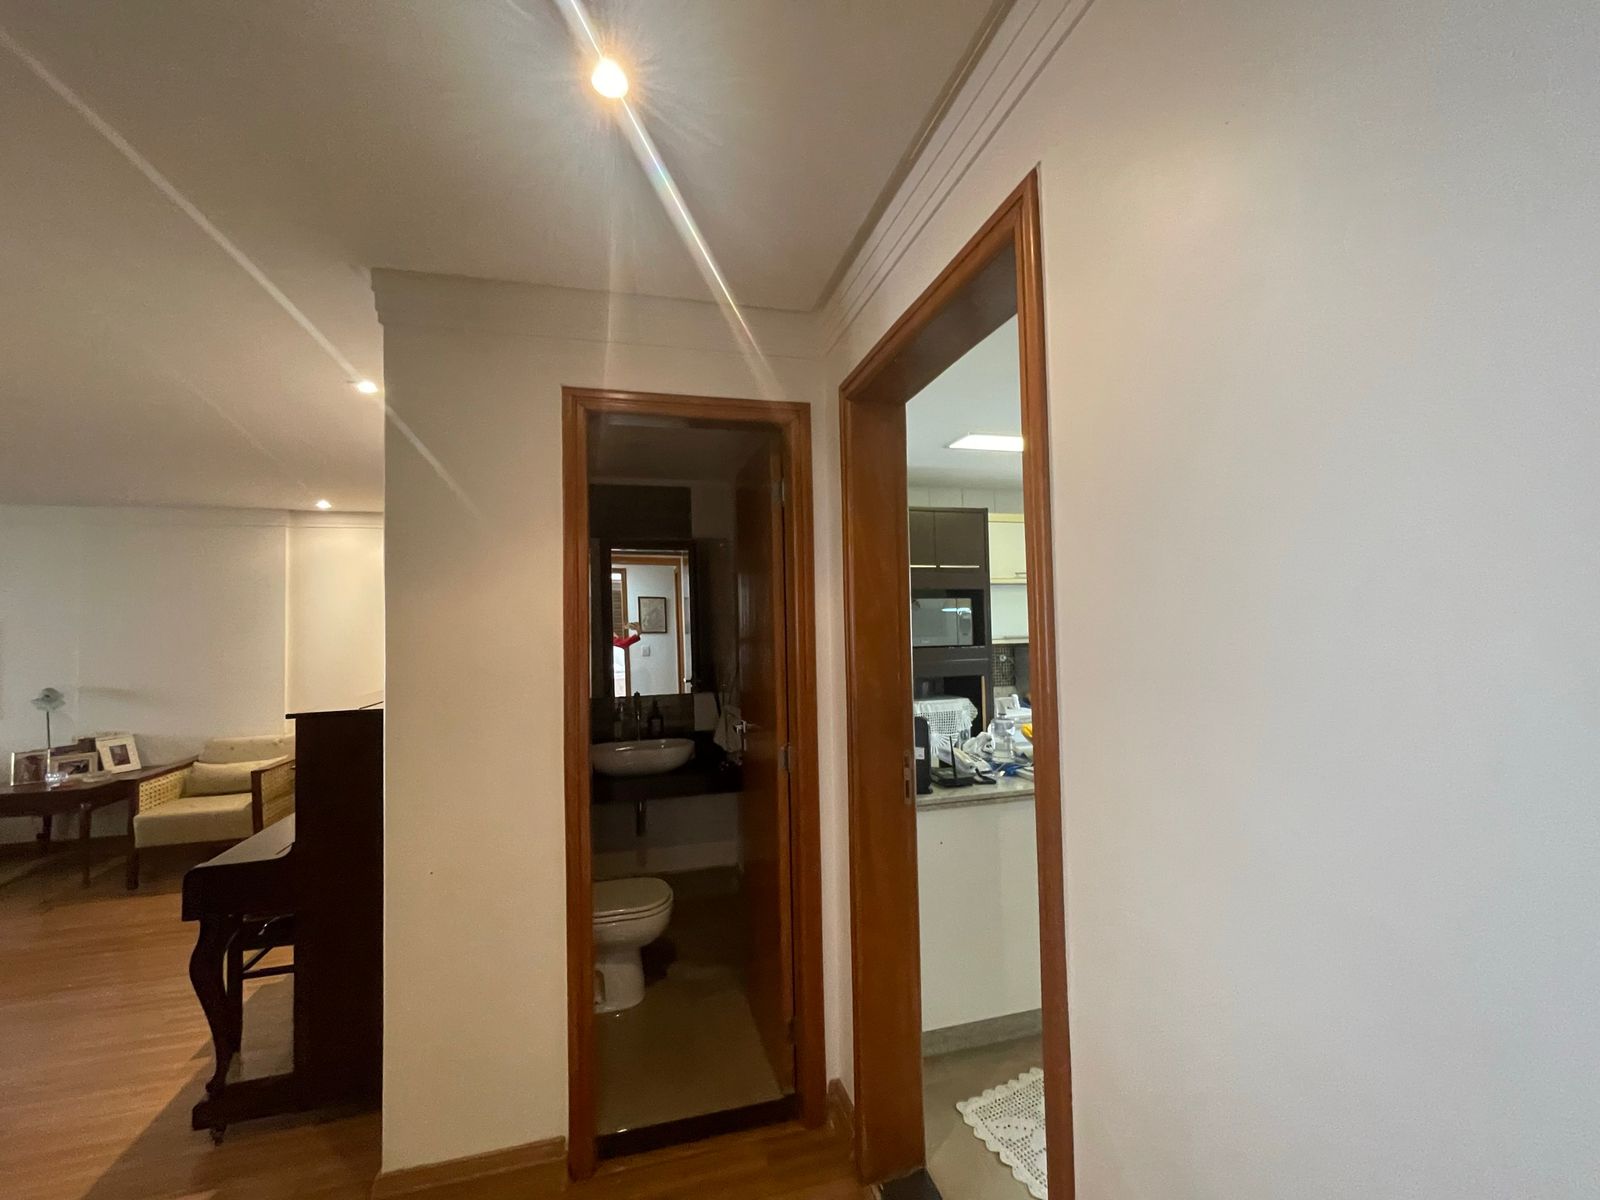 Imagem Apartamento com 3 Quartos à Venda, 167 m²em Setor Bueno - Goiânia